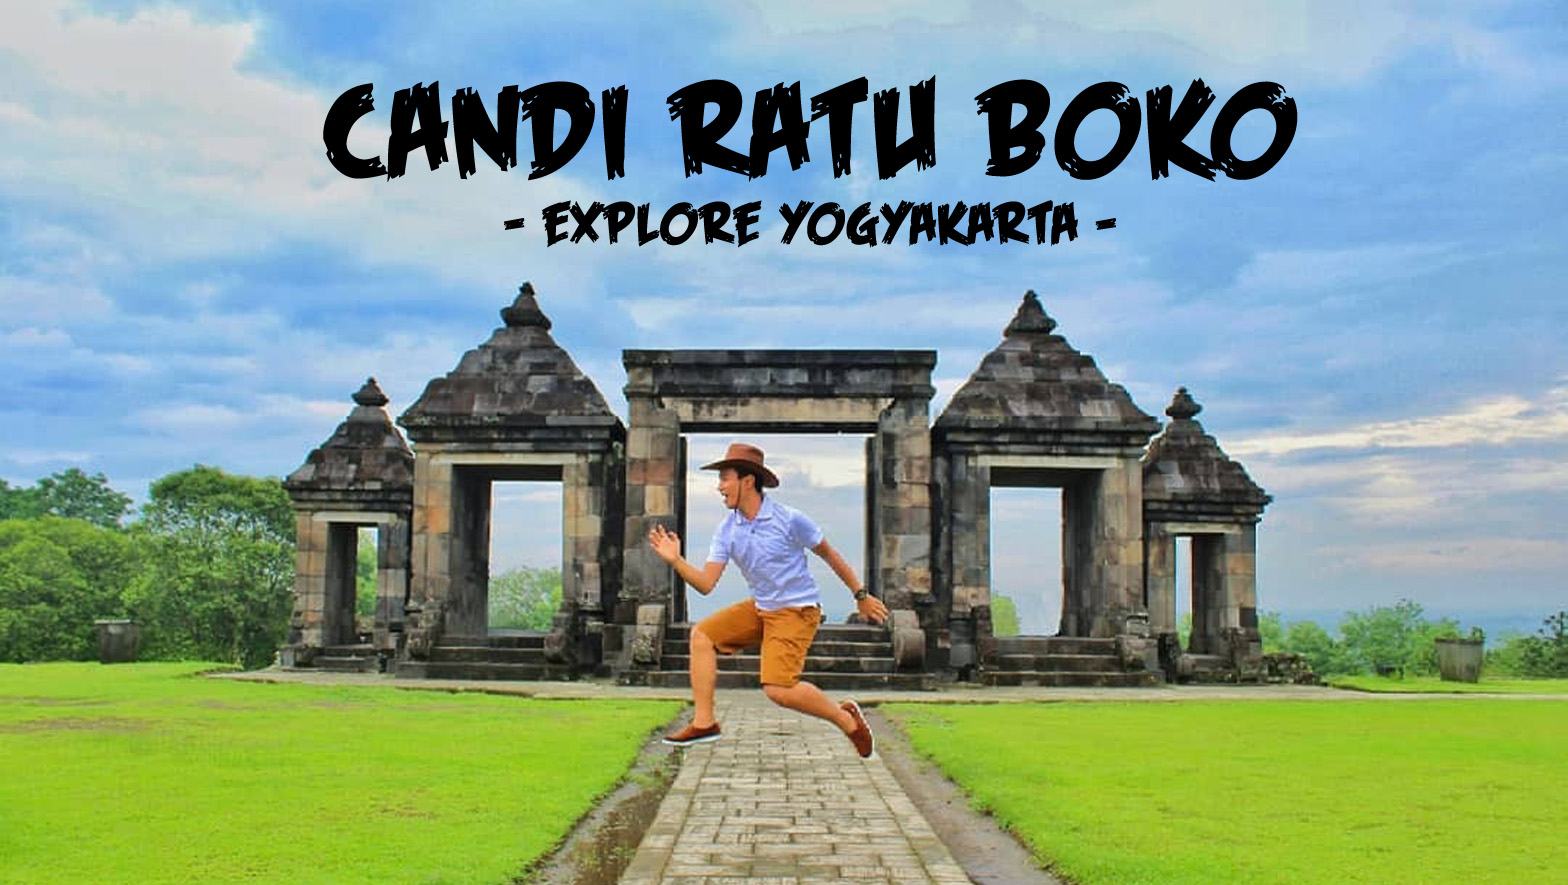 Candi Ratu Boko - Explore Yogyakarta - Joshua Favian Blog